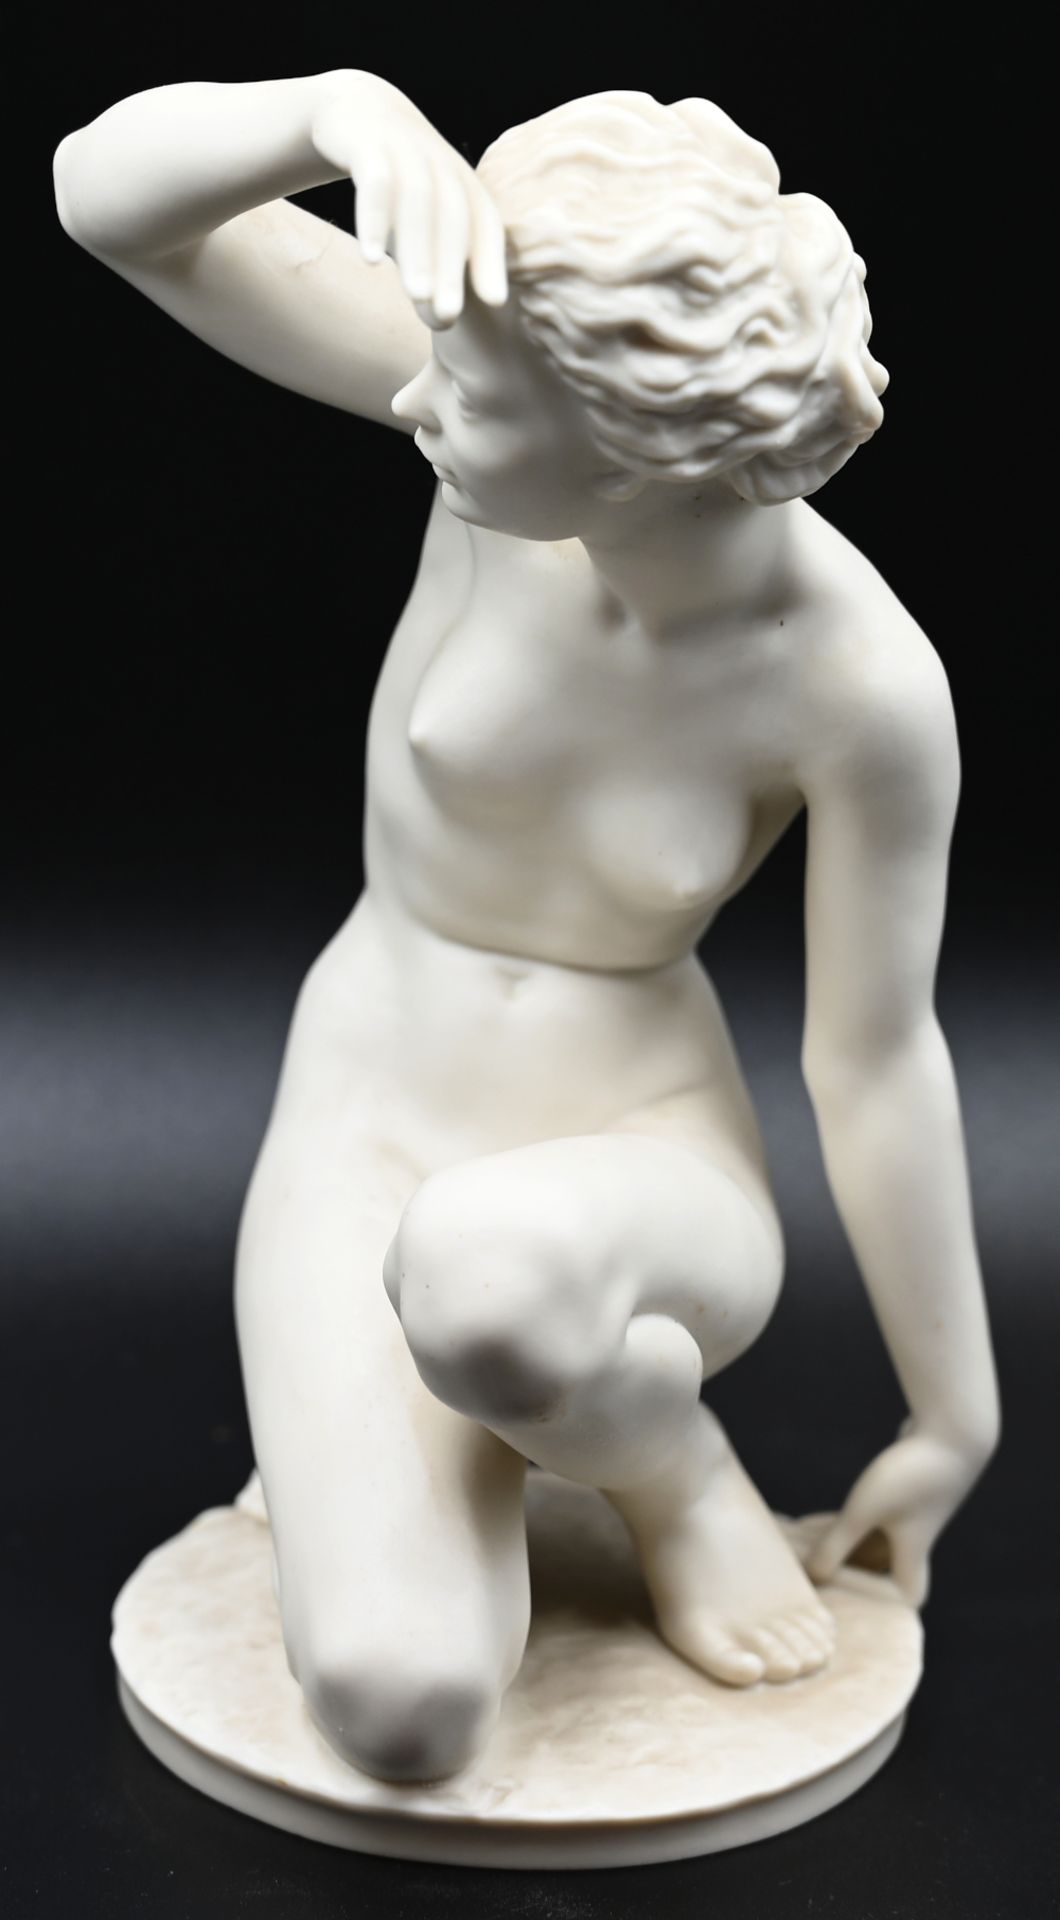 1 Figur Bisquitporzellan HUTSCHENREUTHER "Die Schauende", Entwurf Carl WERNER - Bild 2 aus 6